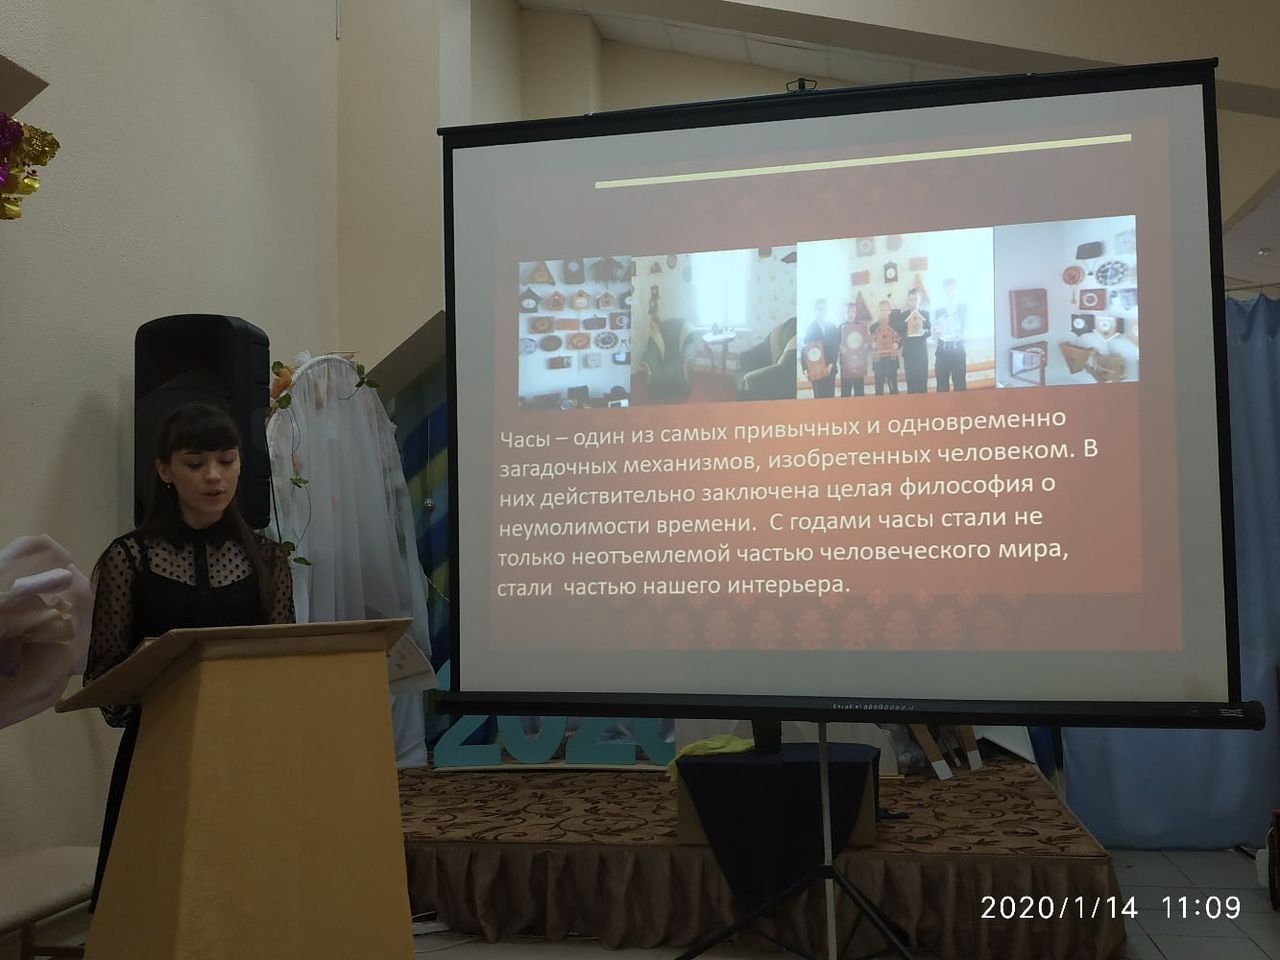 Спасские школьники участвовали в научно-практической конференции «Подвигу жить!» (ФОТО)